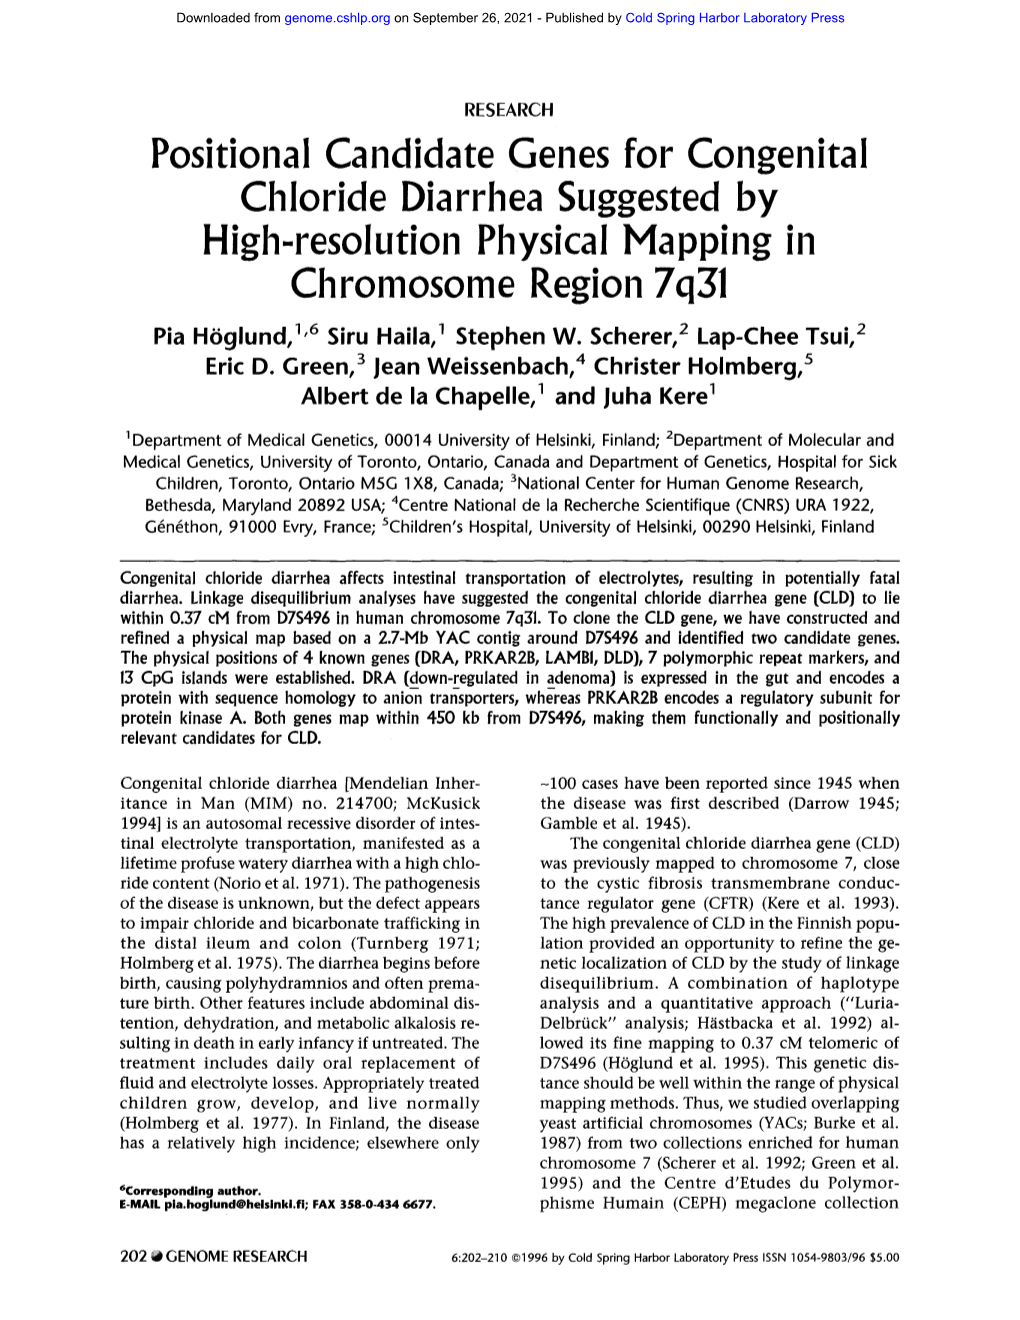 High-Resolution Physical Mapping in Chromosome Region 7Q31 Pia Hoglund, 1'6 Siru Haila, 1 Stephen W